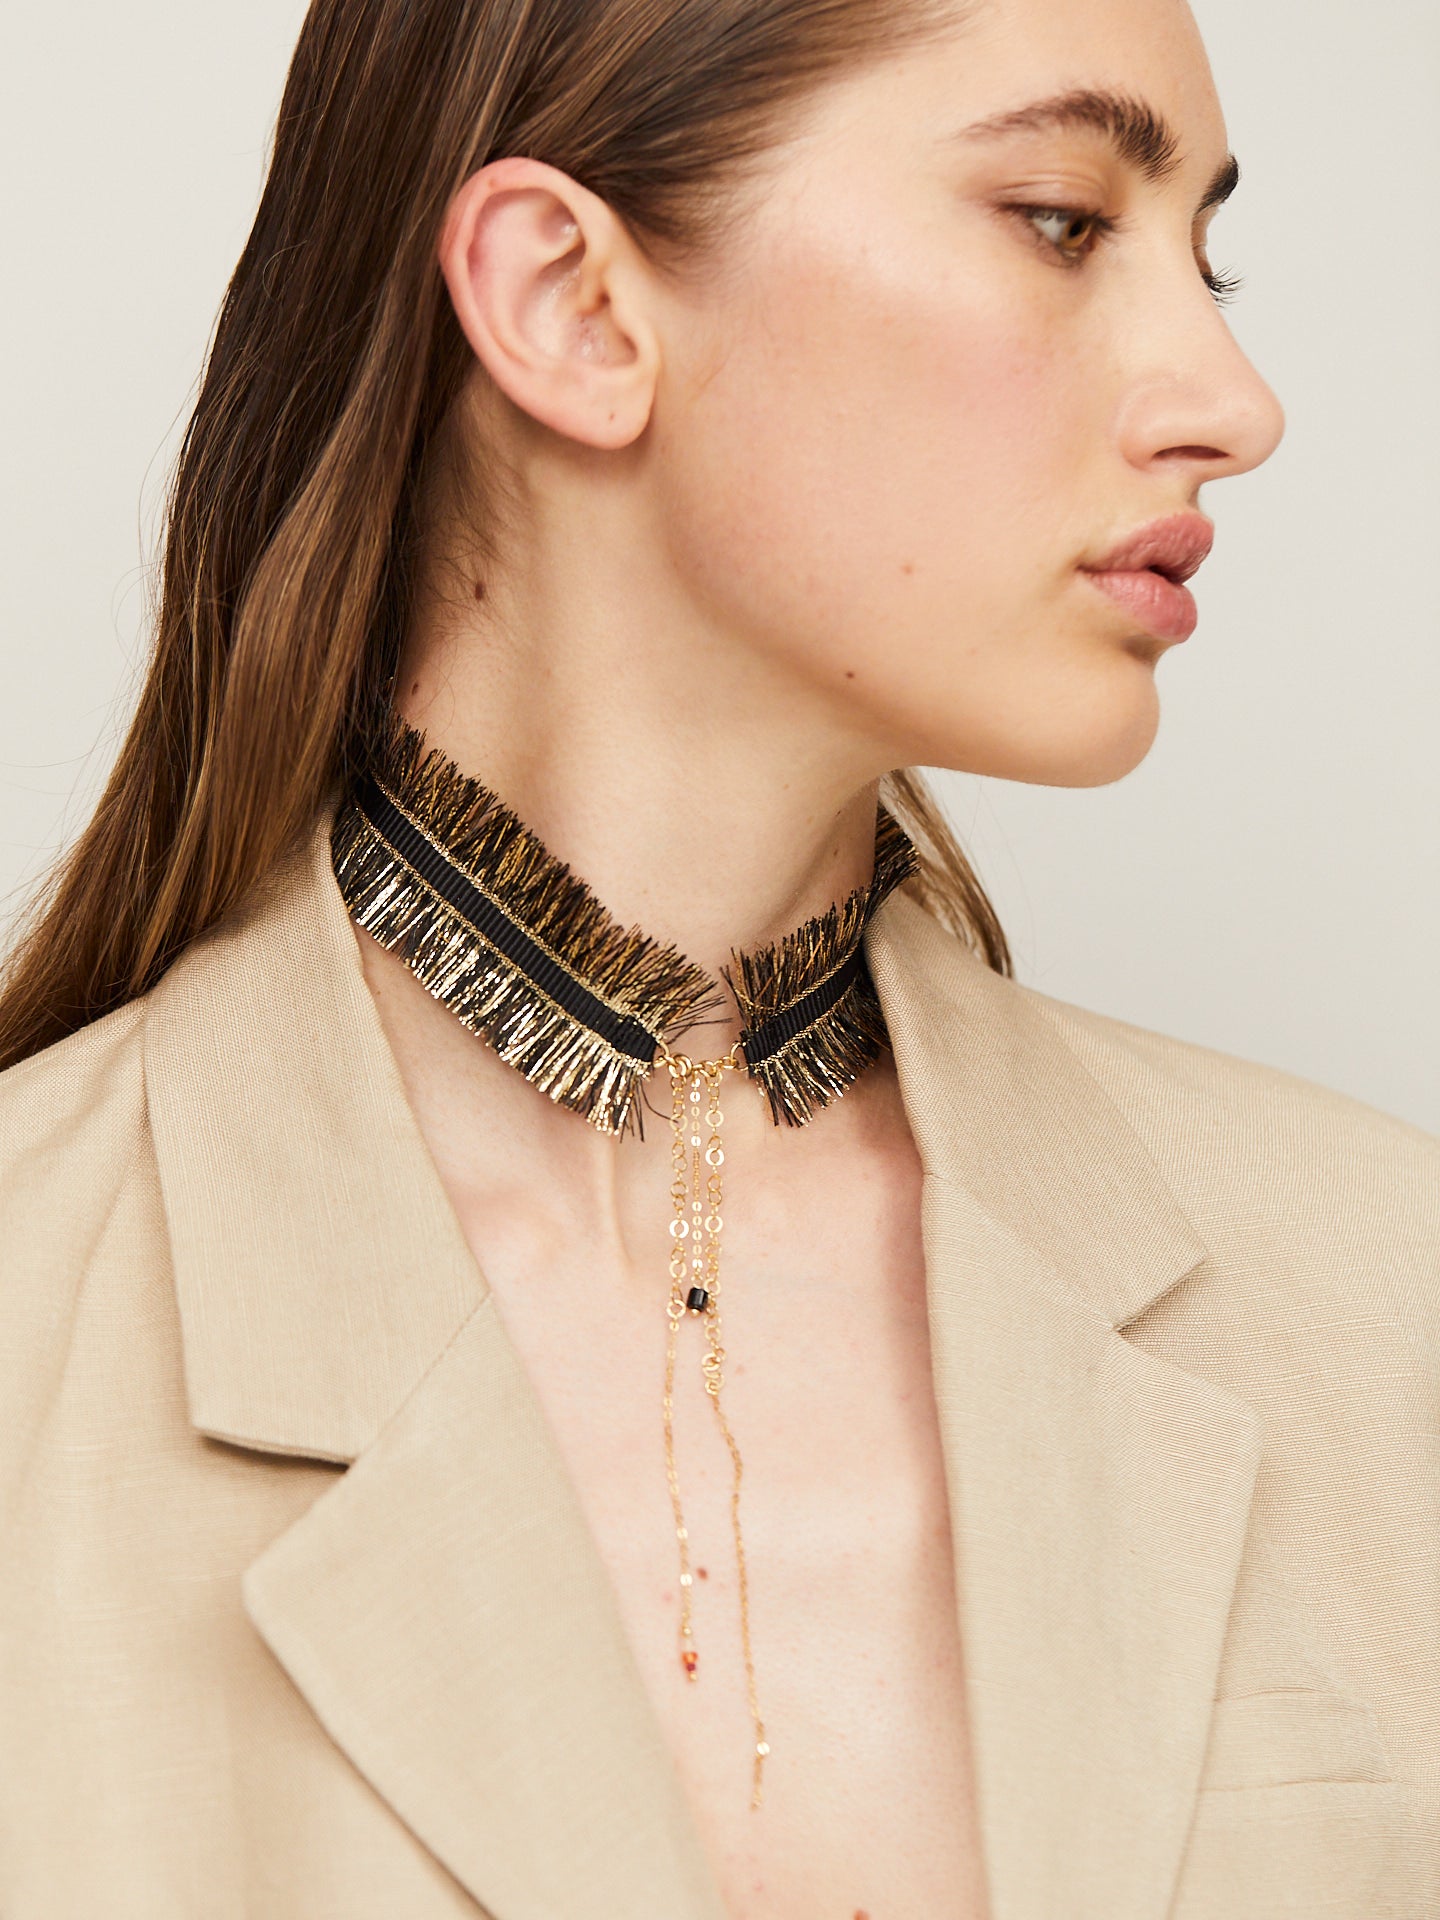 Exzentrische Halskette in Schwarz und Gold, getragen von einer jungen, attraktiven Frau, die im Profil zu Boden guckt.